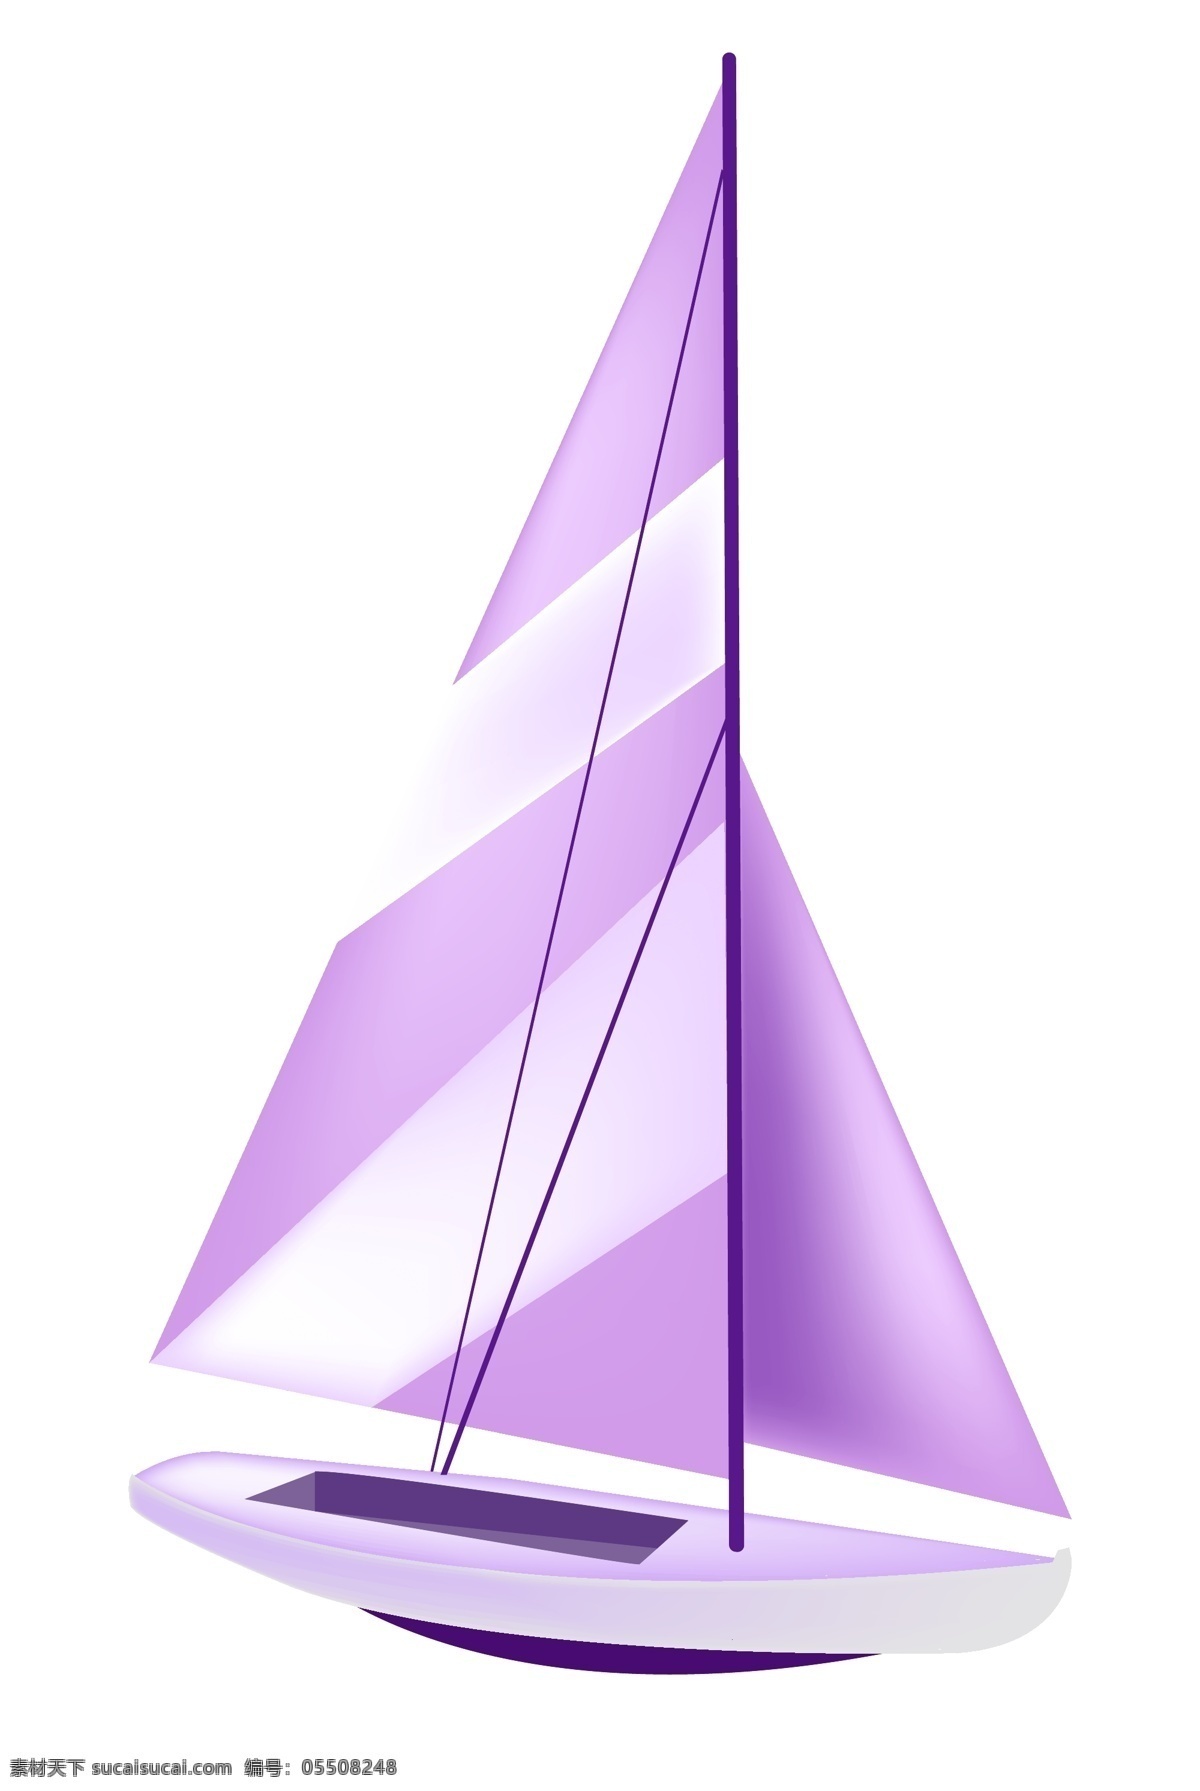 紫色帆船轮船 紫色帆船 大海航海 轮船